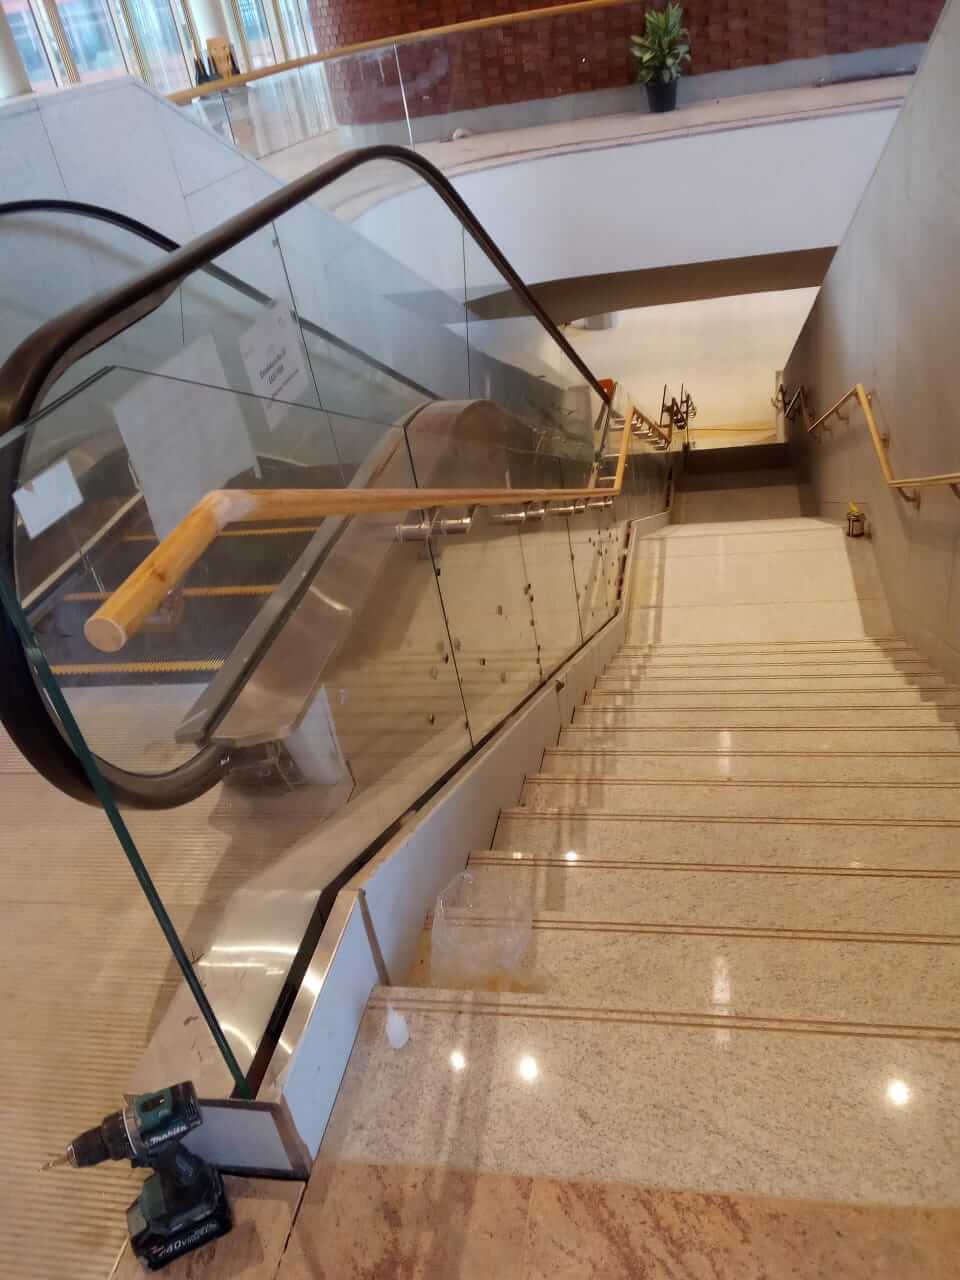 Bamboo handrail at Bengaluru international airport T2